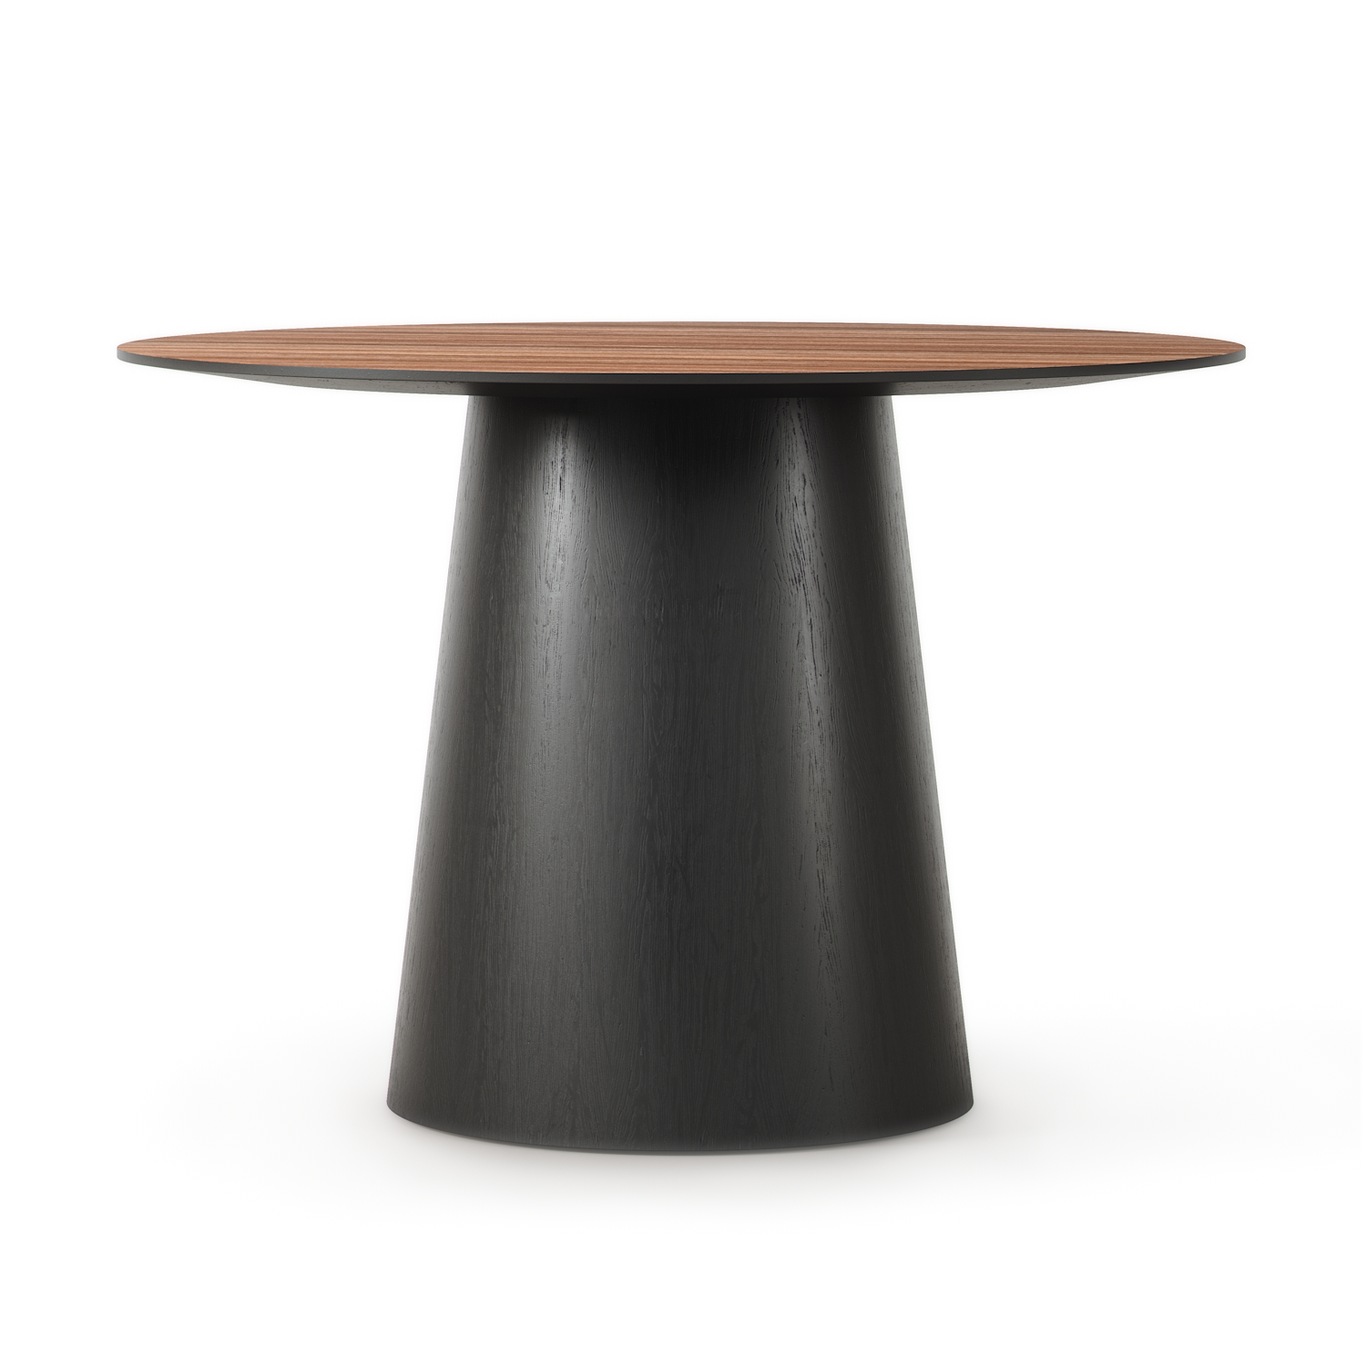 Social Dining Table Walnut / Black Oak, 110 cm